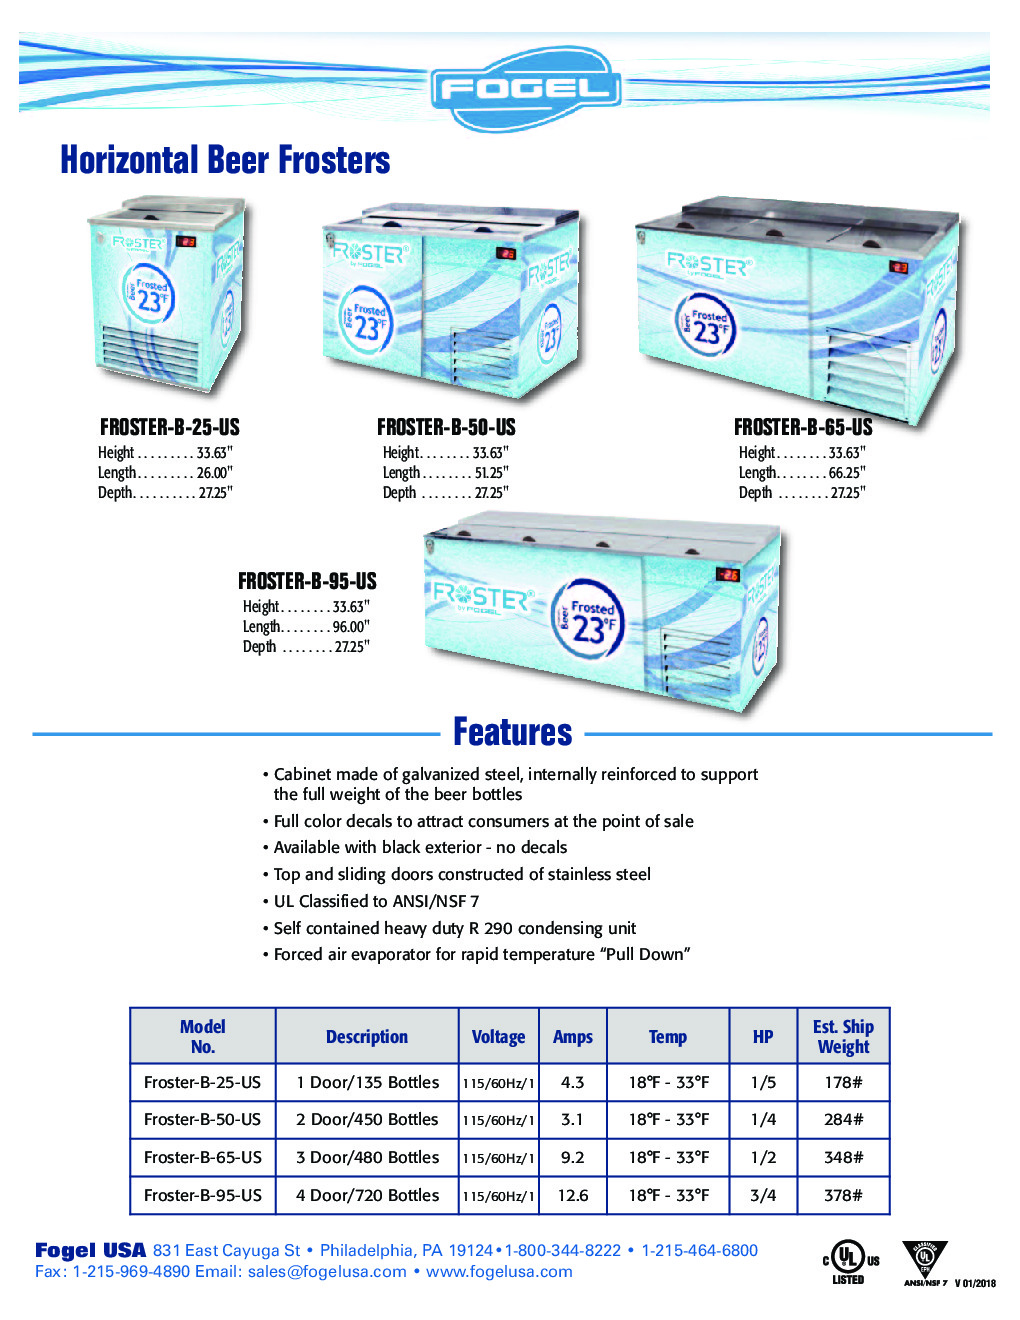 Fogel USA FROSTER-B-95-HC Bottle Cooler